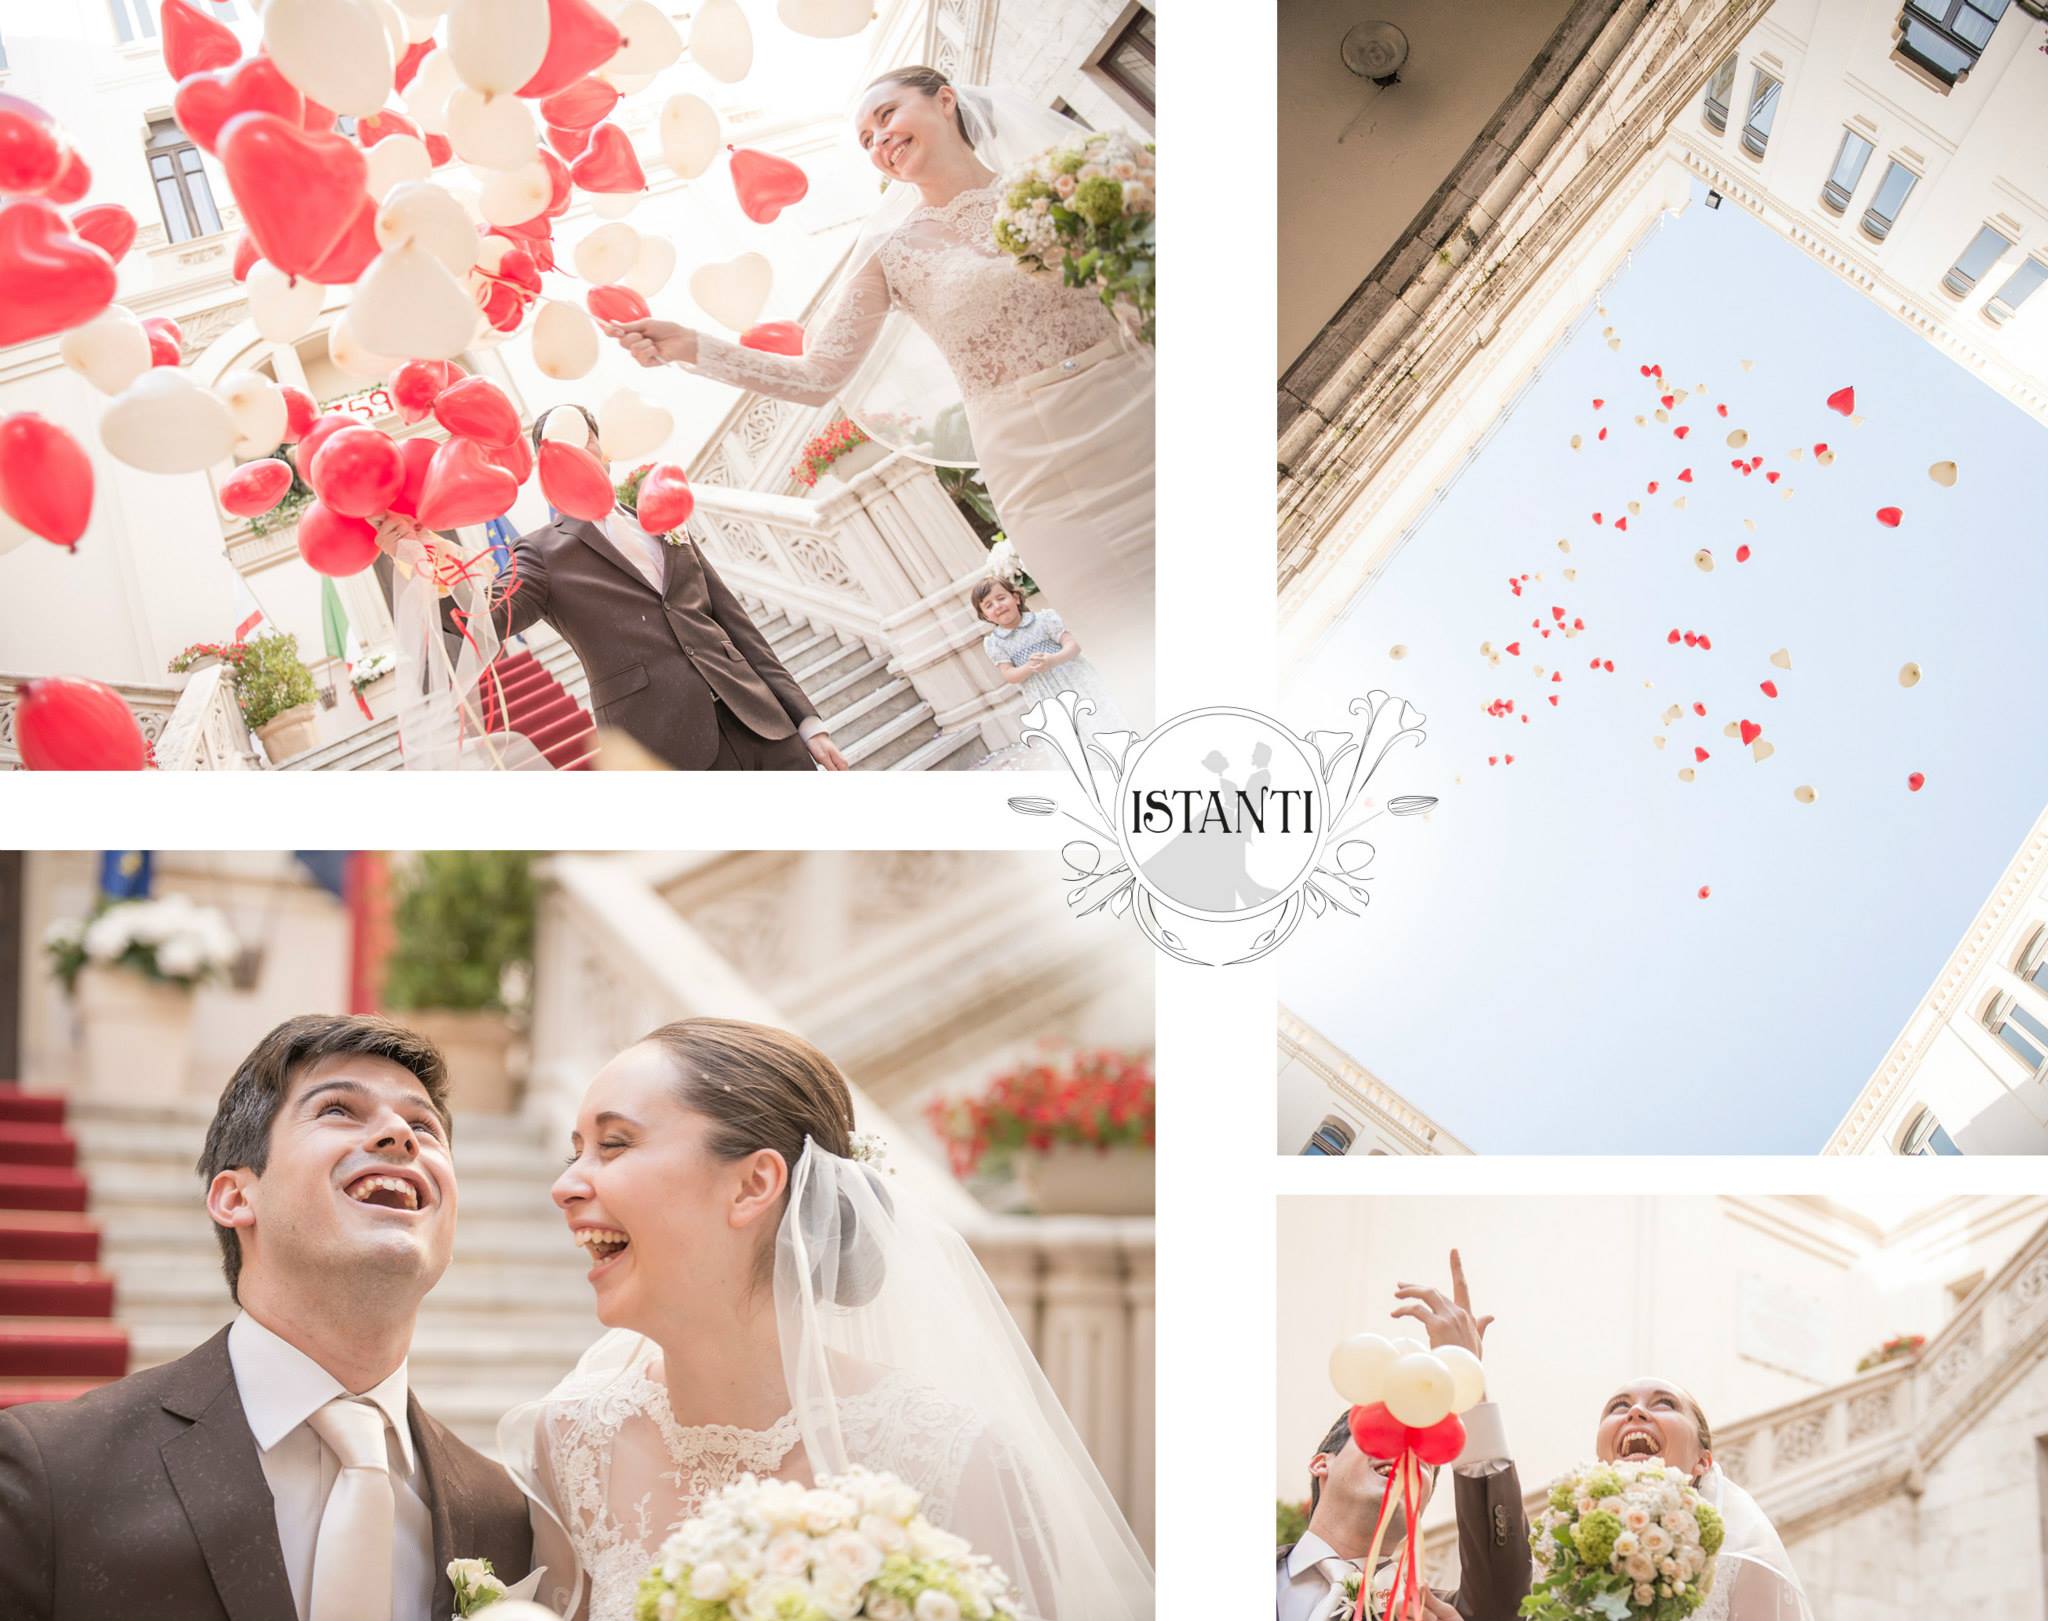 Istanti – Fotografia matrimoniale (100 images)